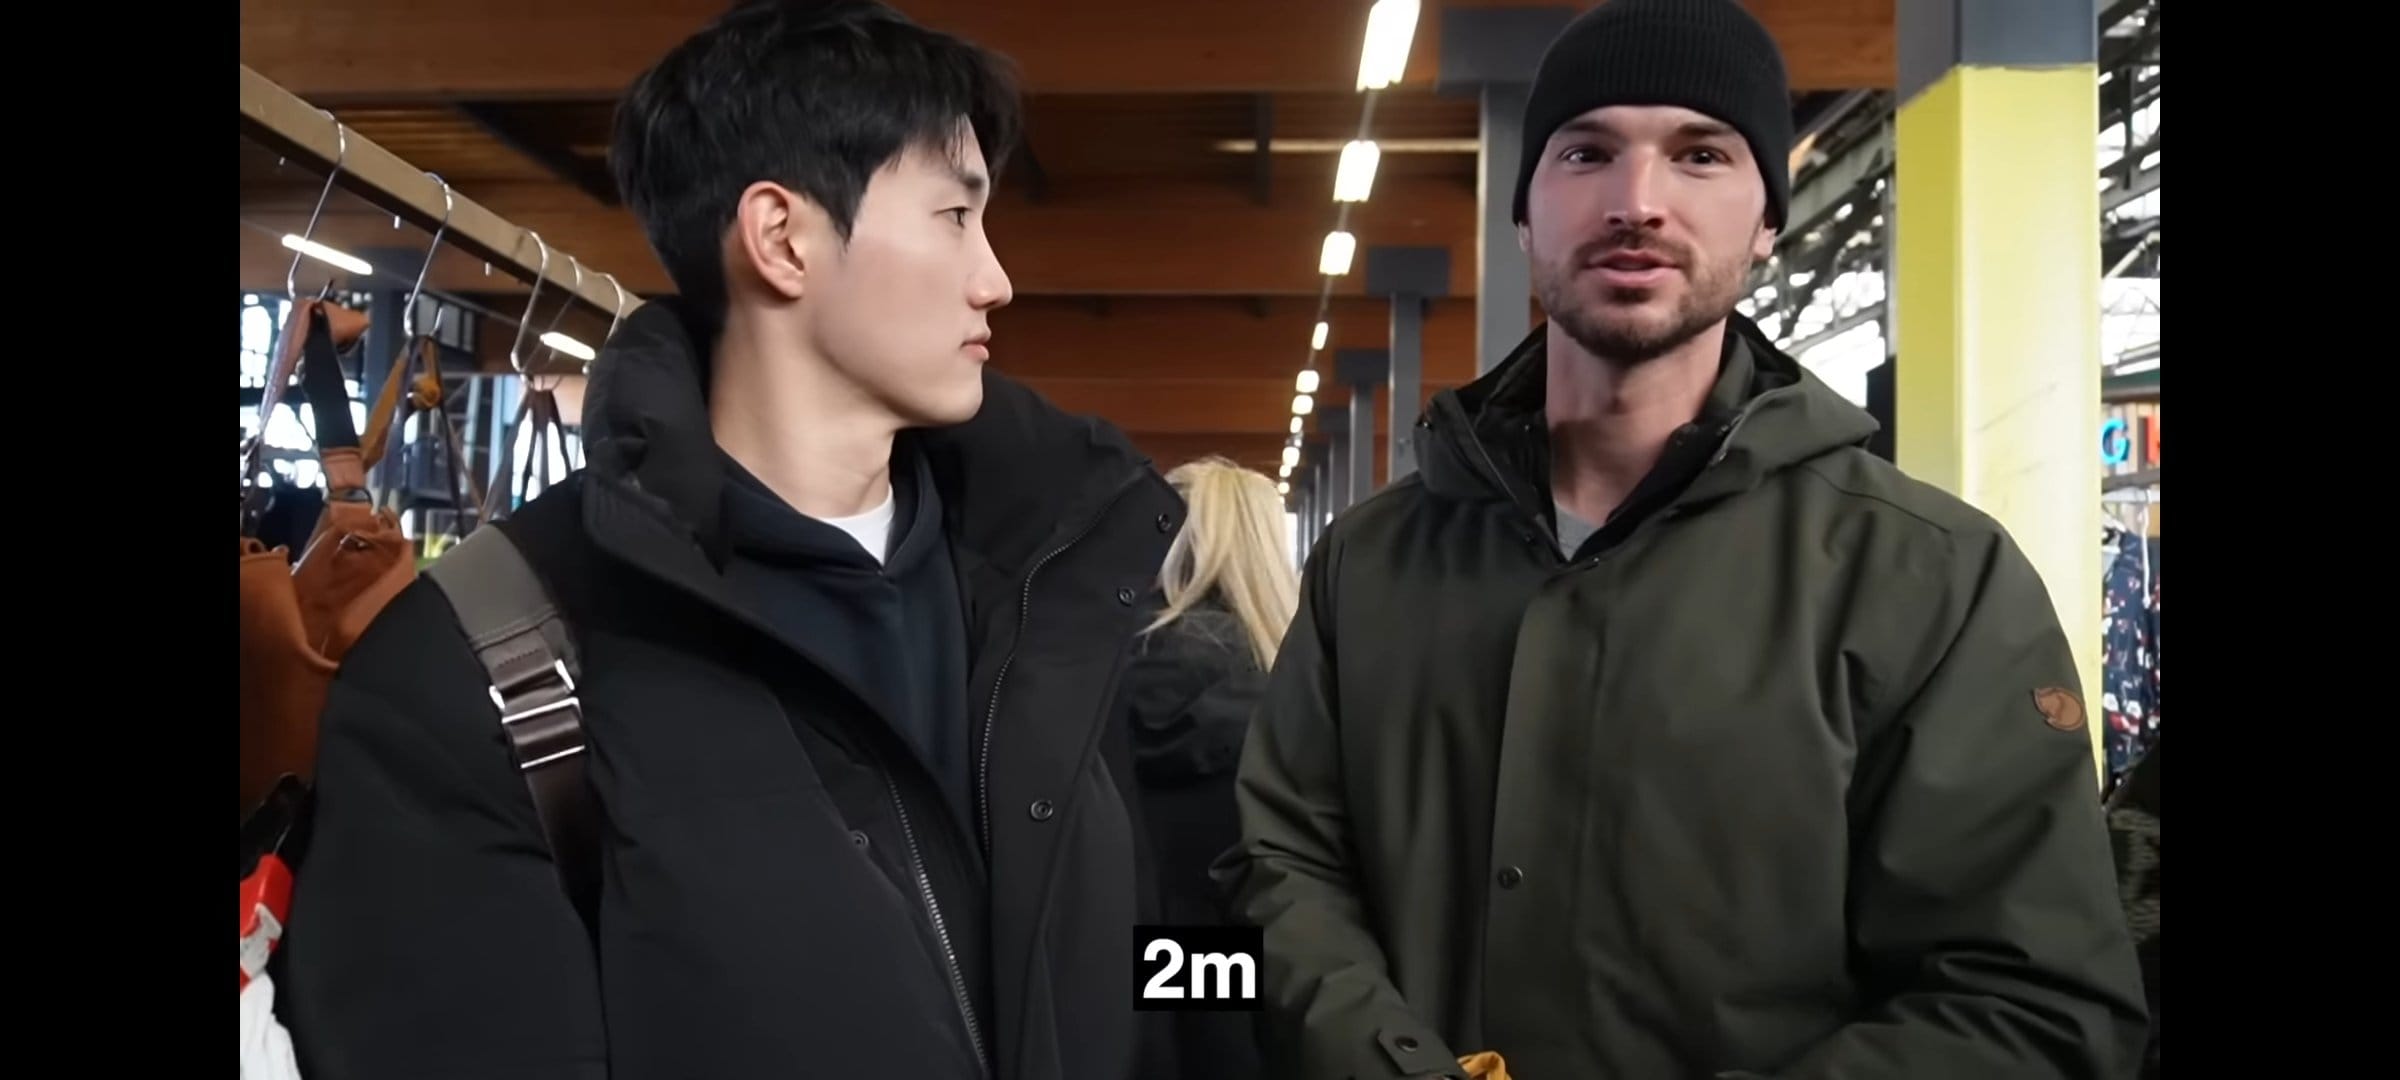 네덜란드 간 193cm 한국인 남성